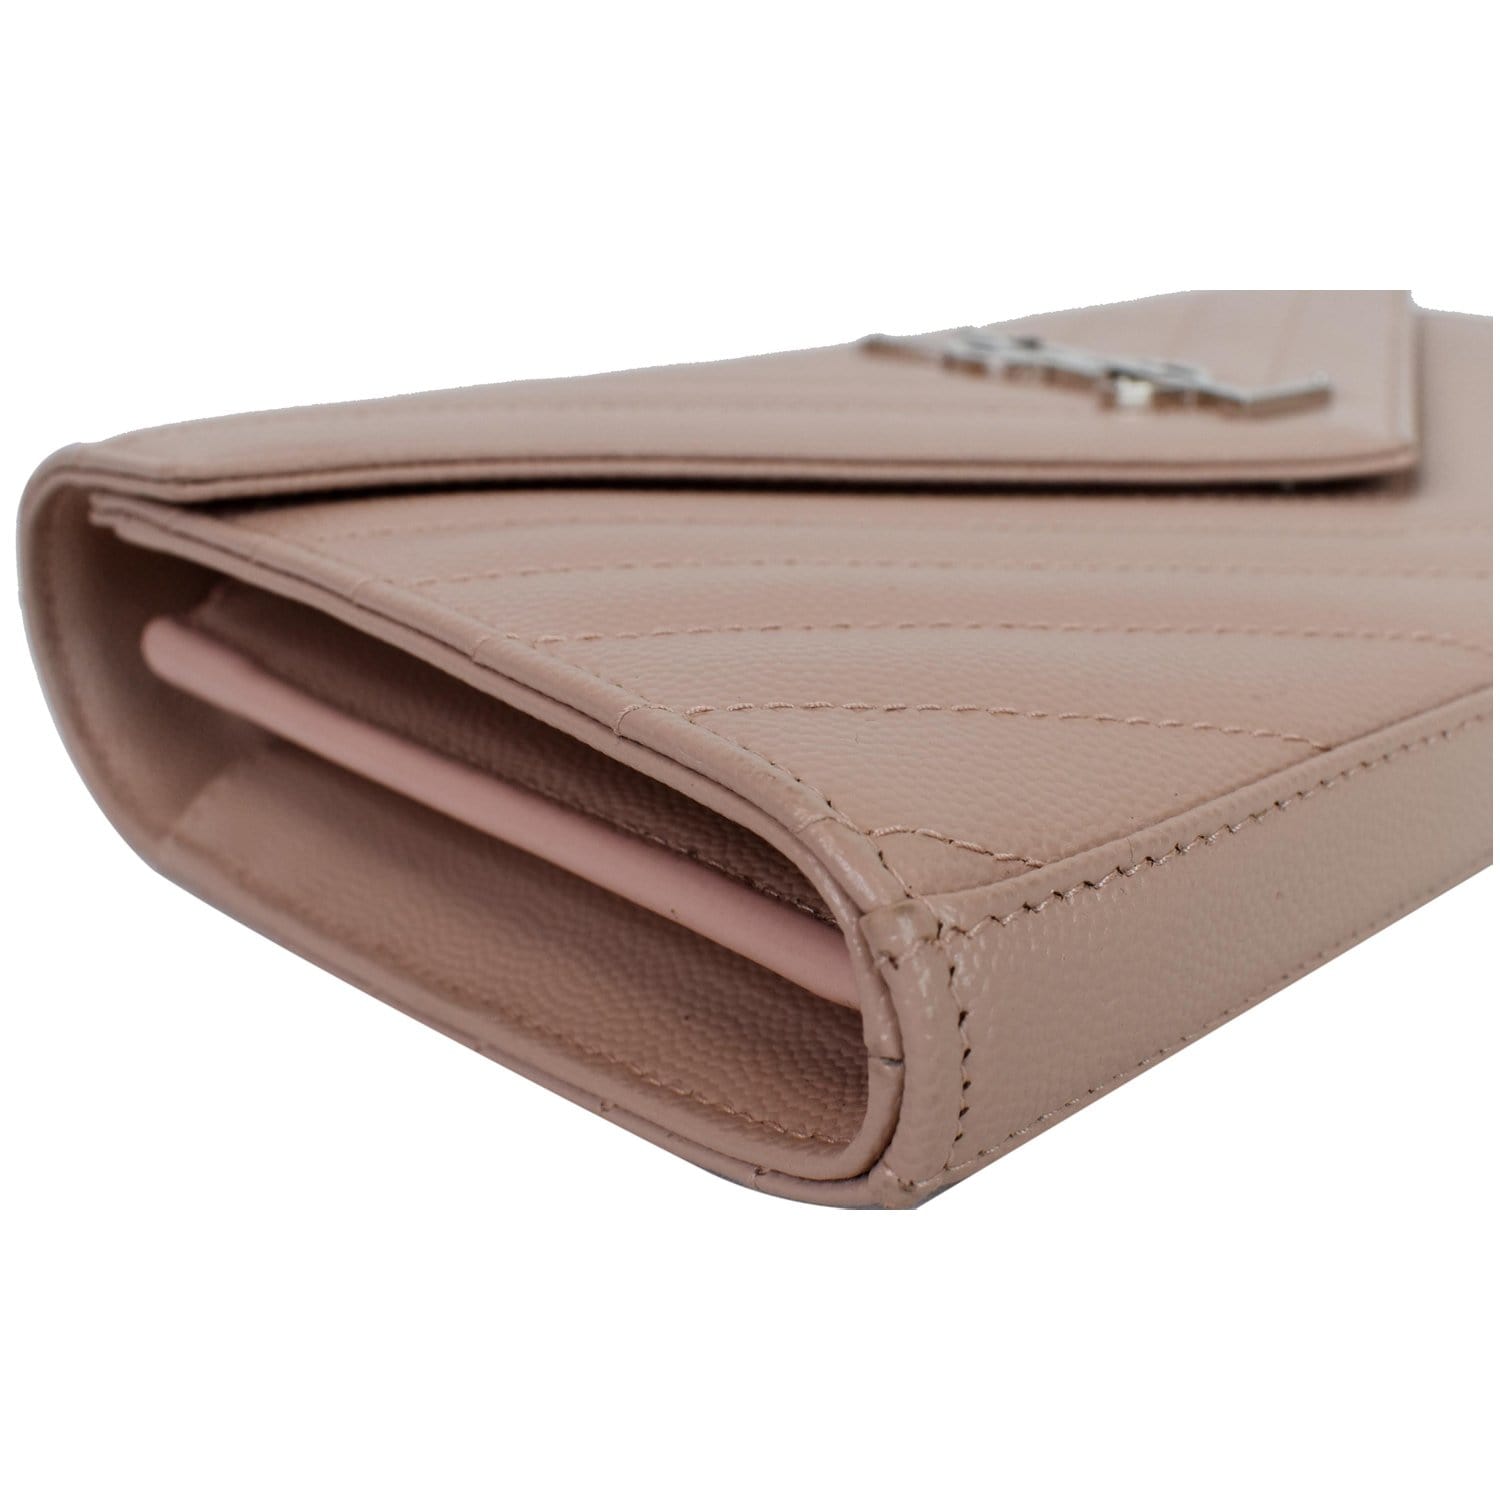 Saint Laurent Large Monogram Saint Laurent Flap Wallet  Pink leather wallet,  Real leather wallet, Pink duffle bag